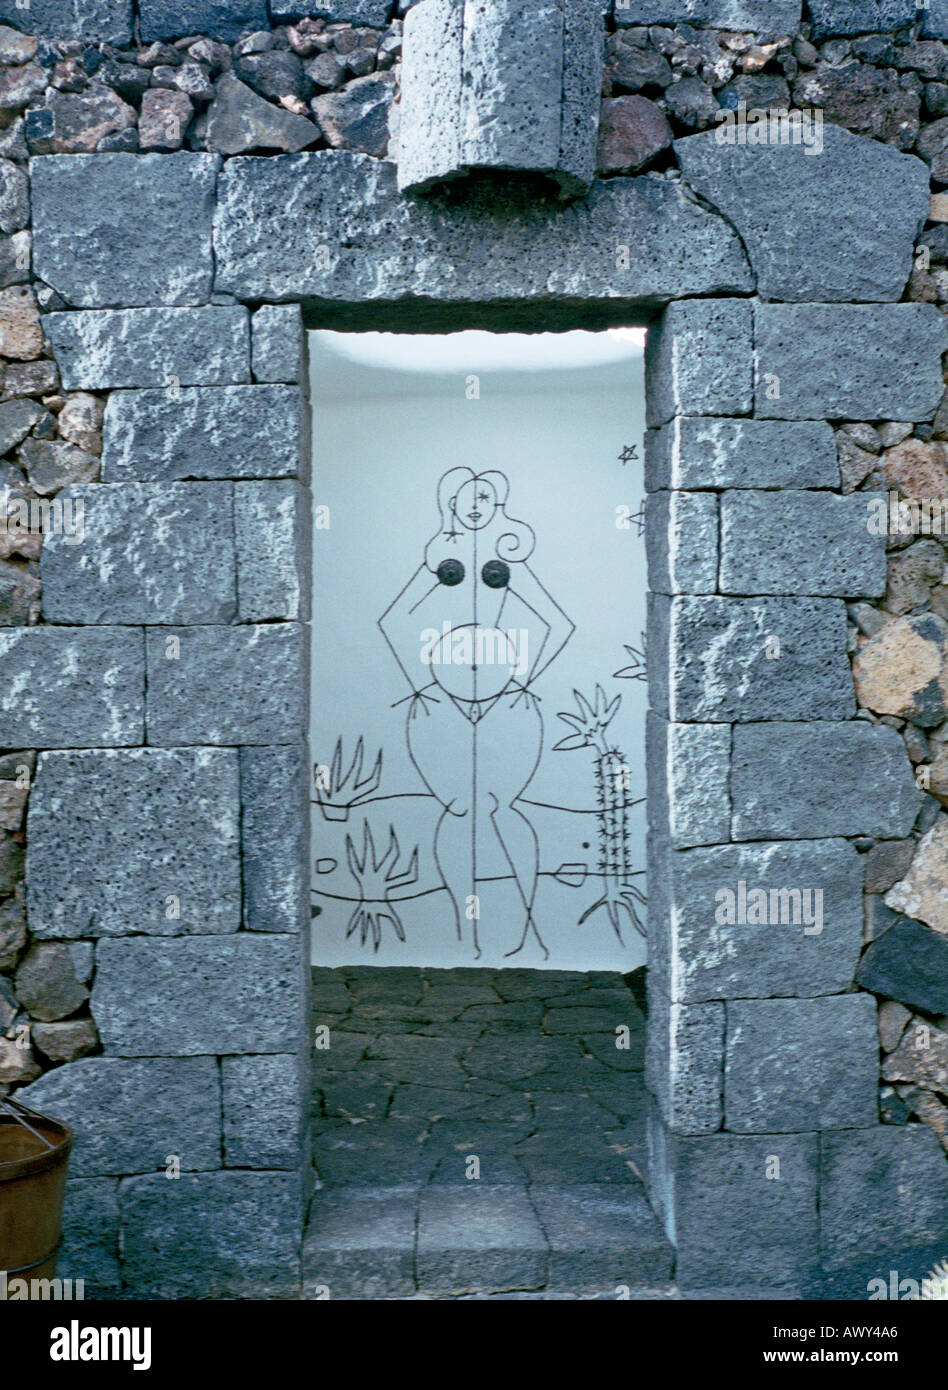 La femme cartoon exécuté par Cesar Manrique au jardin de cactus de Lanzarote island pour indiquer les toilettes publiques Banque D'Images